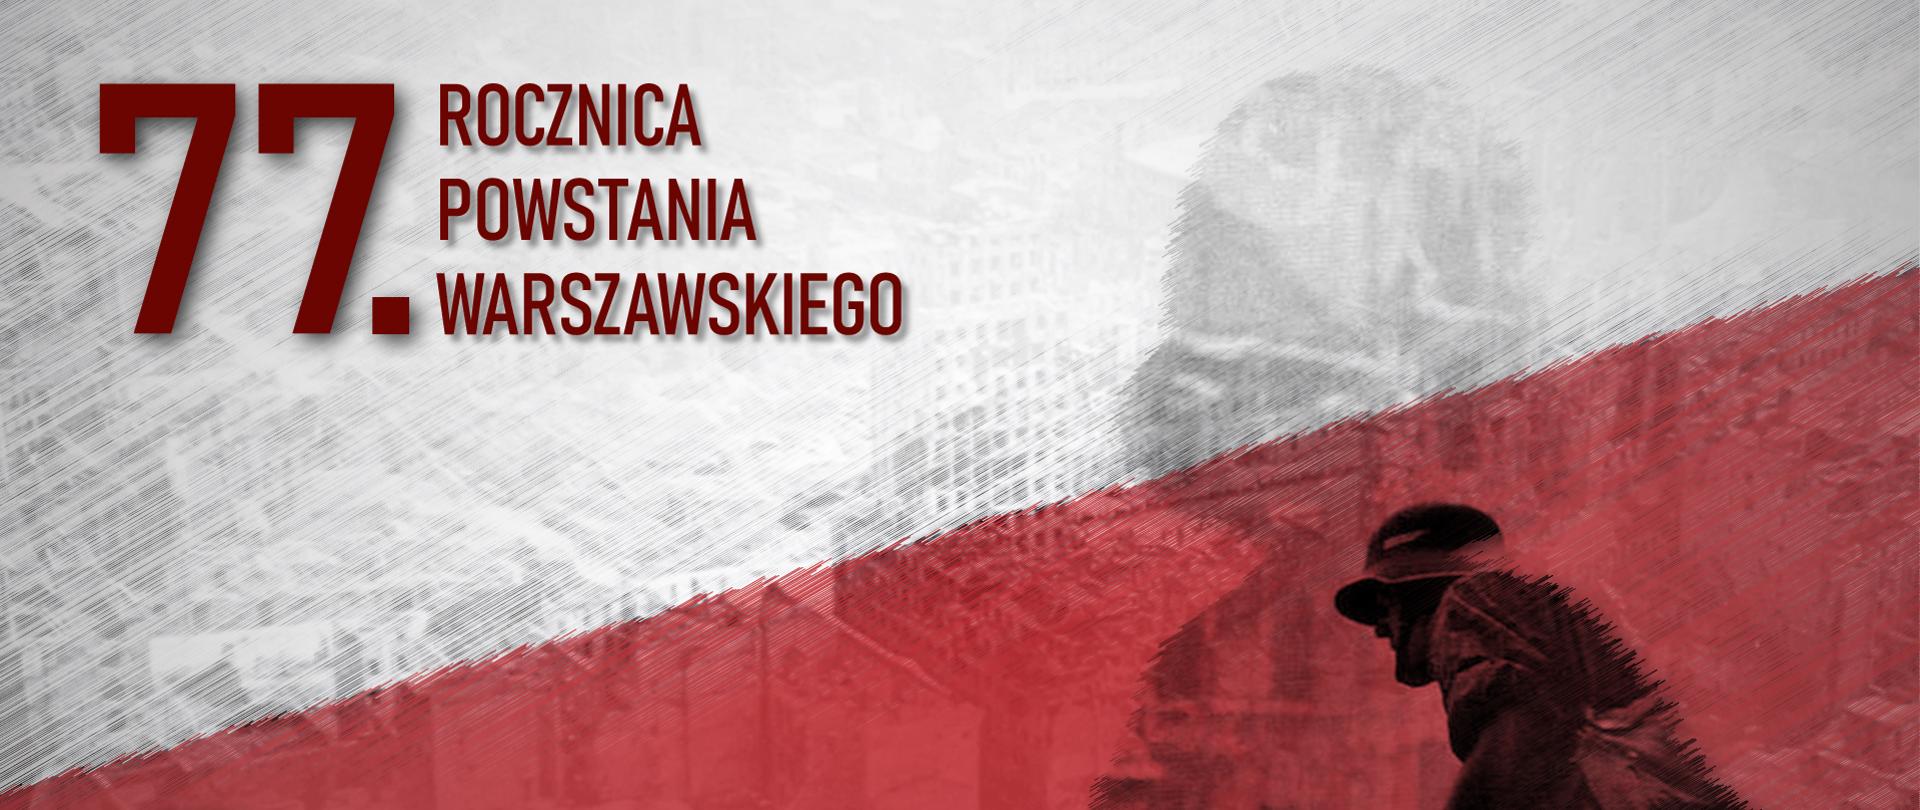 Grafika upamiętniająca 77. rocznicę Powstania Warszawskiego 